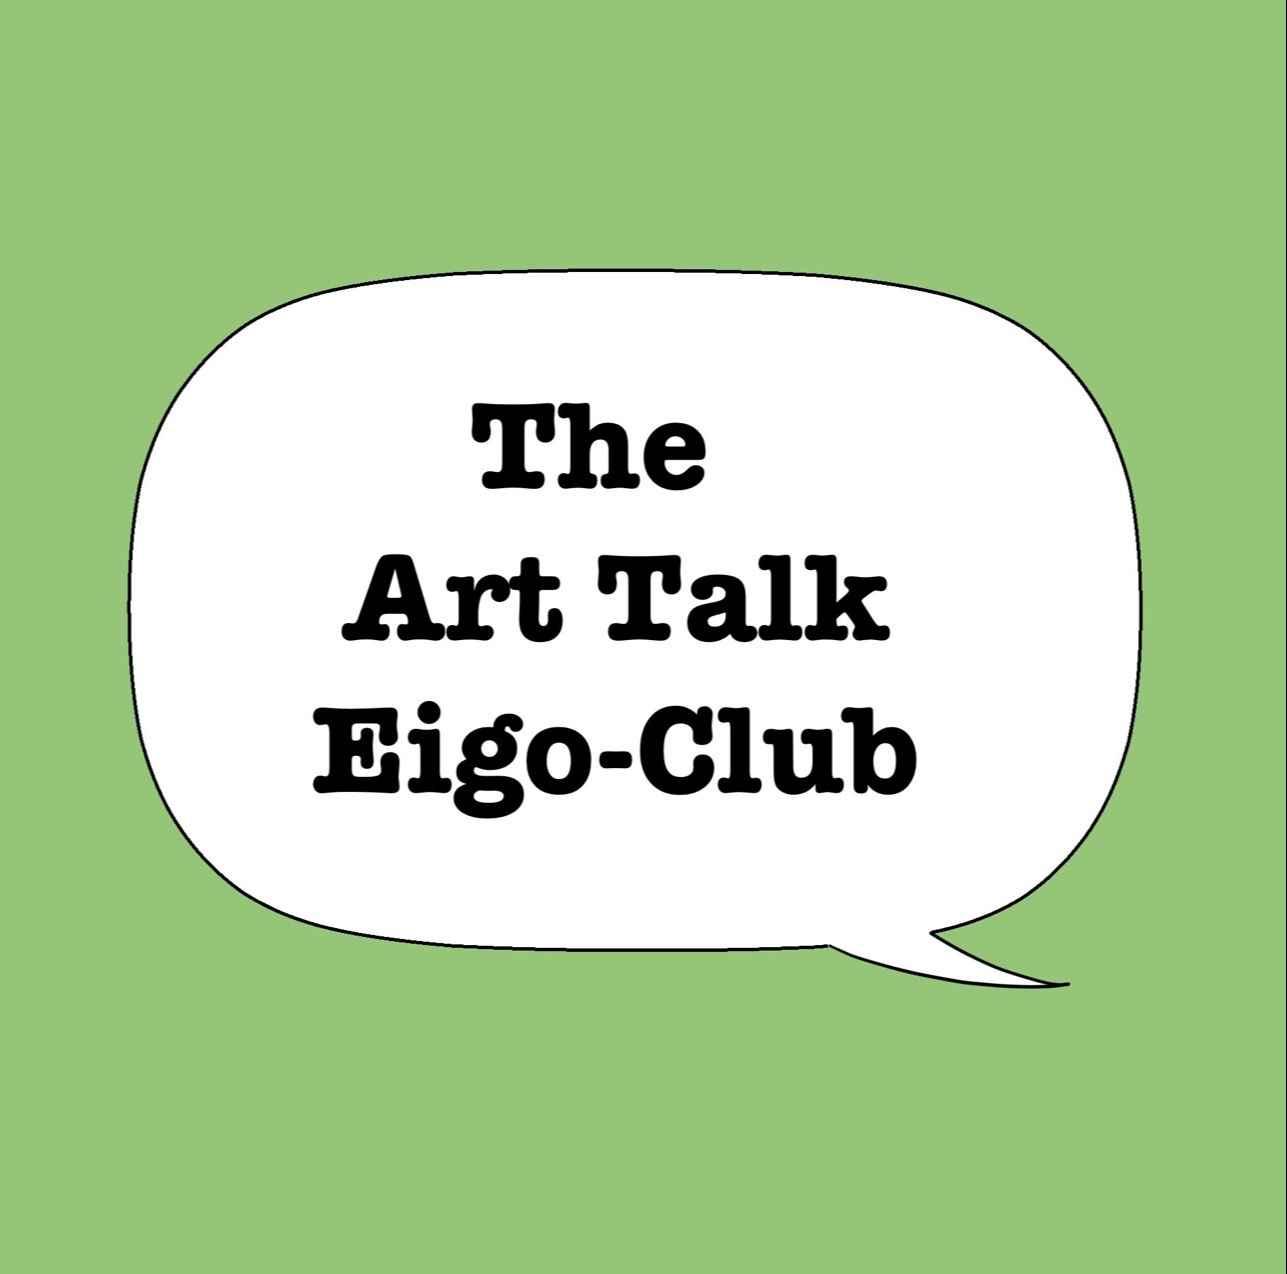 The ArtTalk Eigo-Club